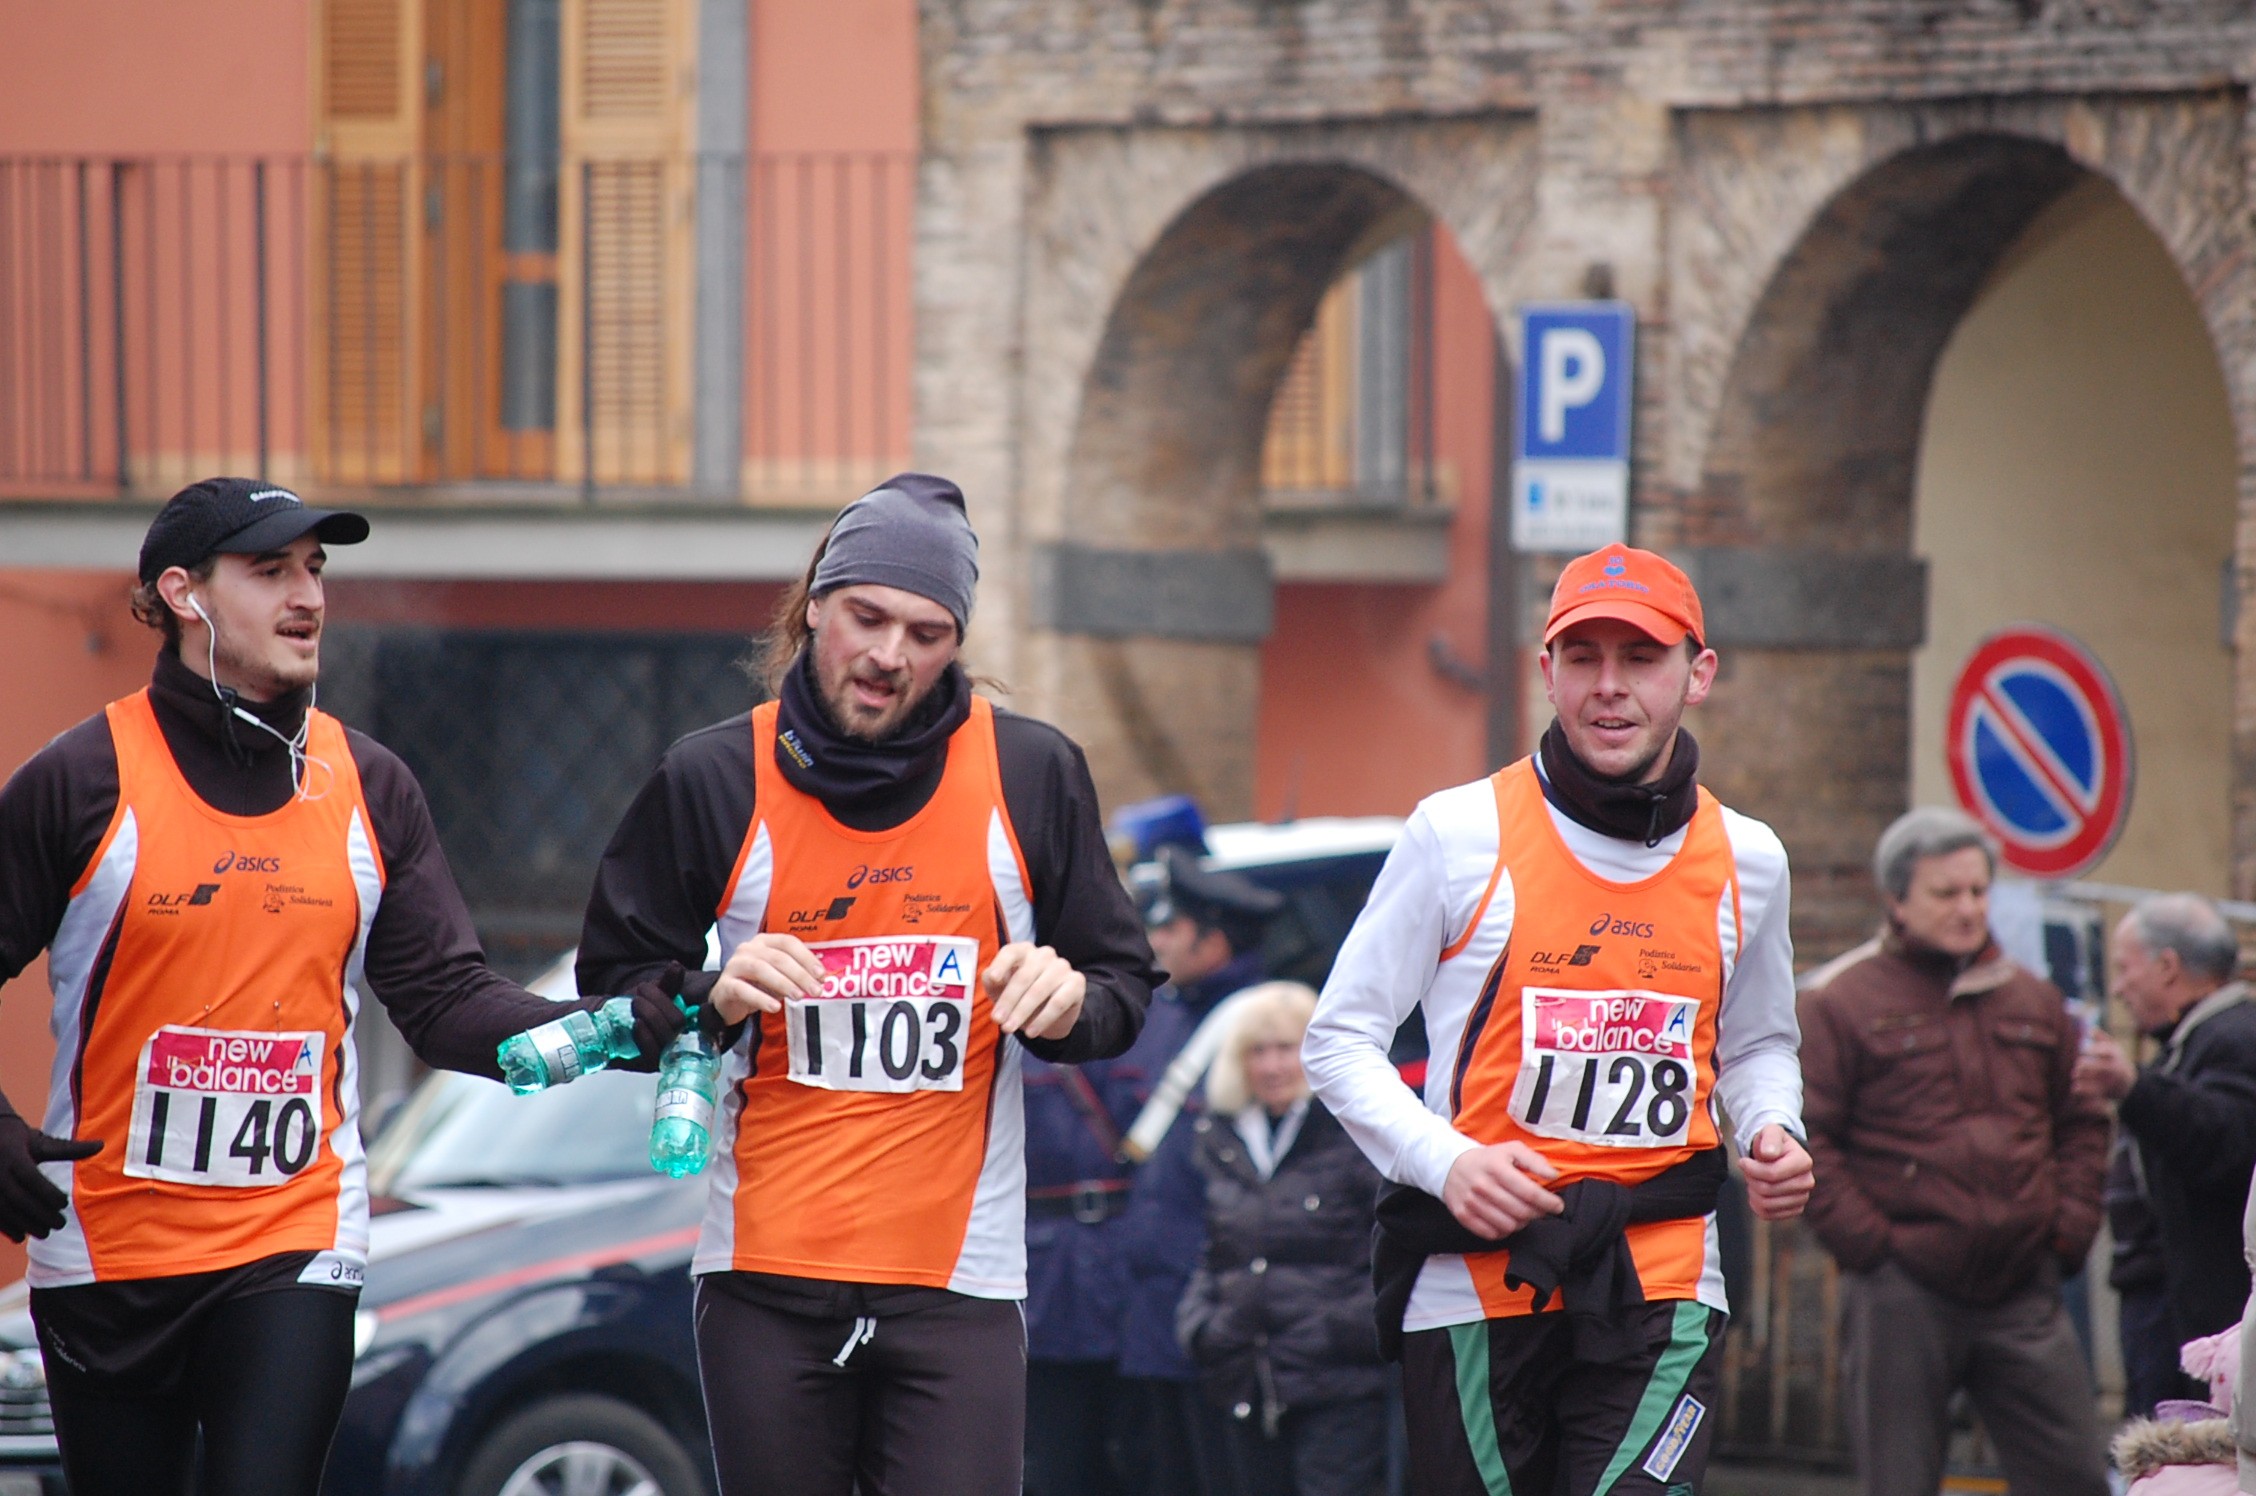 Maratonina dei Tre Comuni (30/01/2011) 084